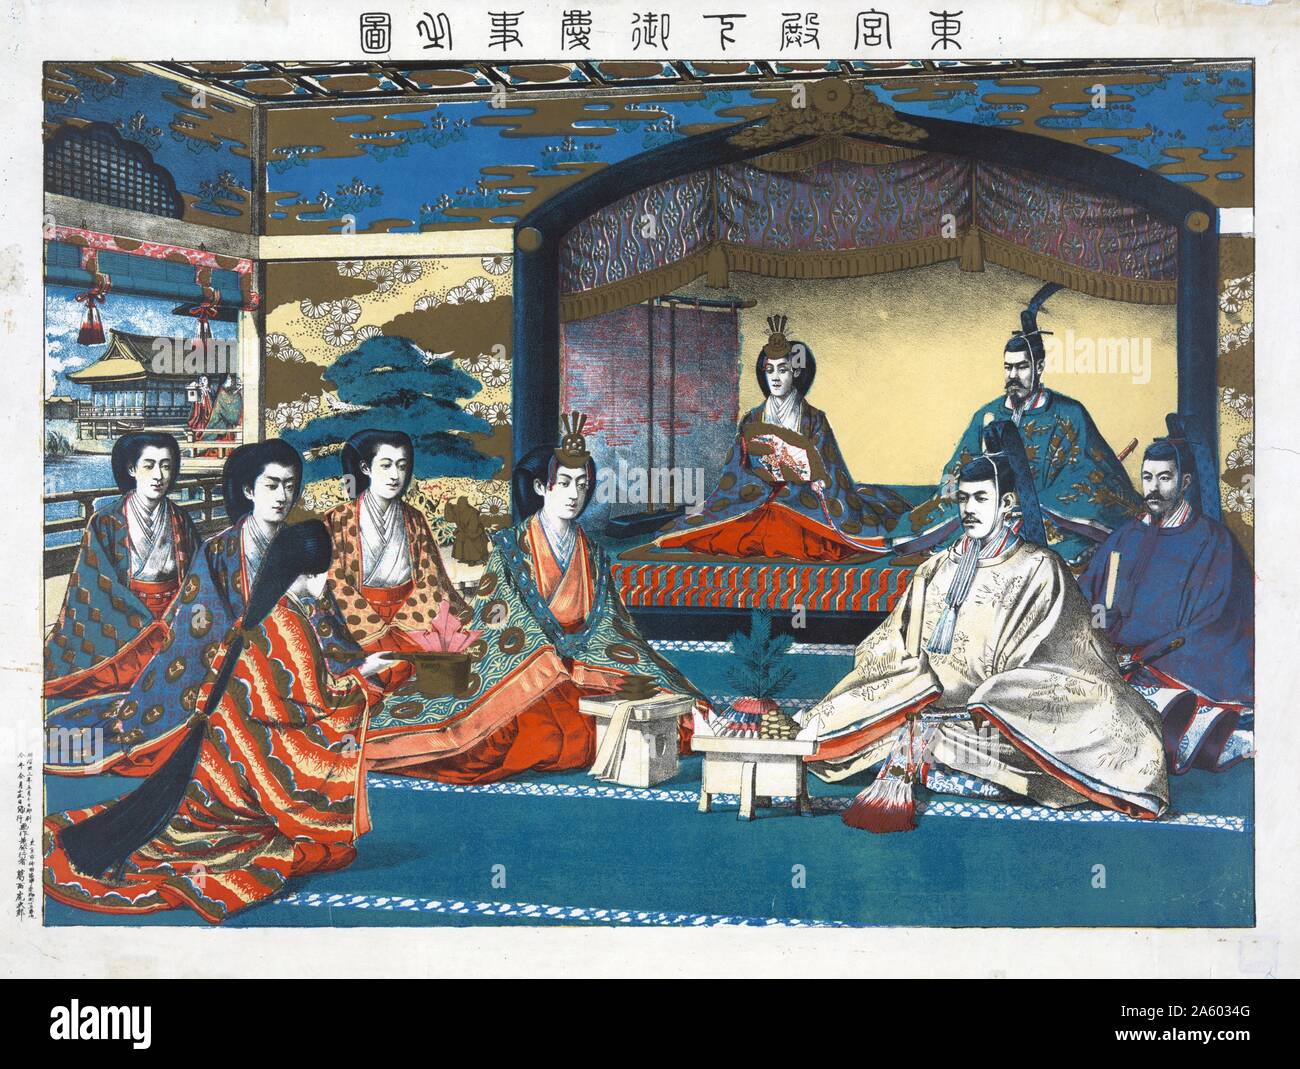 Holzschnitt Illustration der Prinz und die Prinzessin bei ihrer Hochzeit. Meiji-Kaiser von Japan und andere Mitglieder der kaiserlichen Familie sind vorhanden. Datiert 1900 Stockfoto